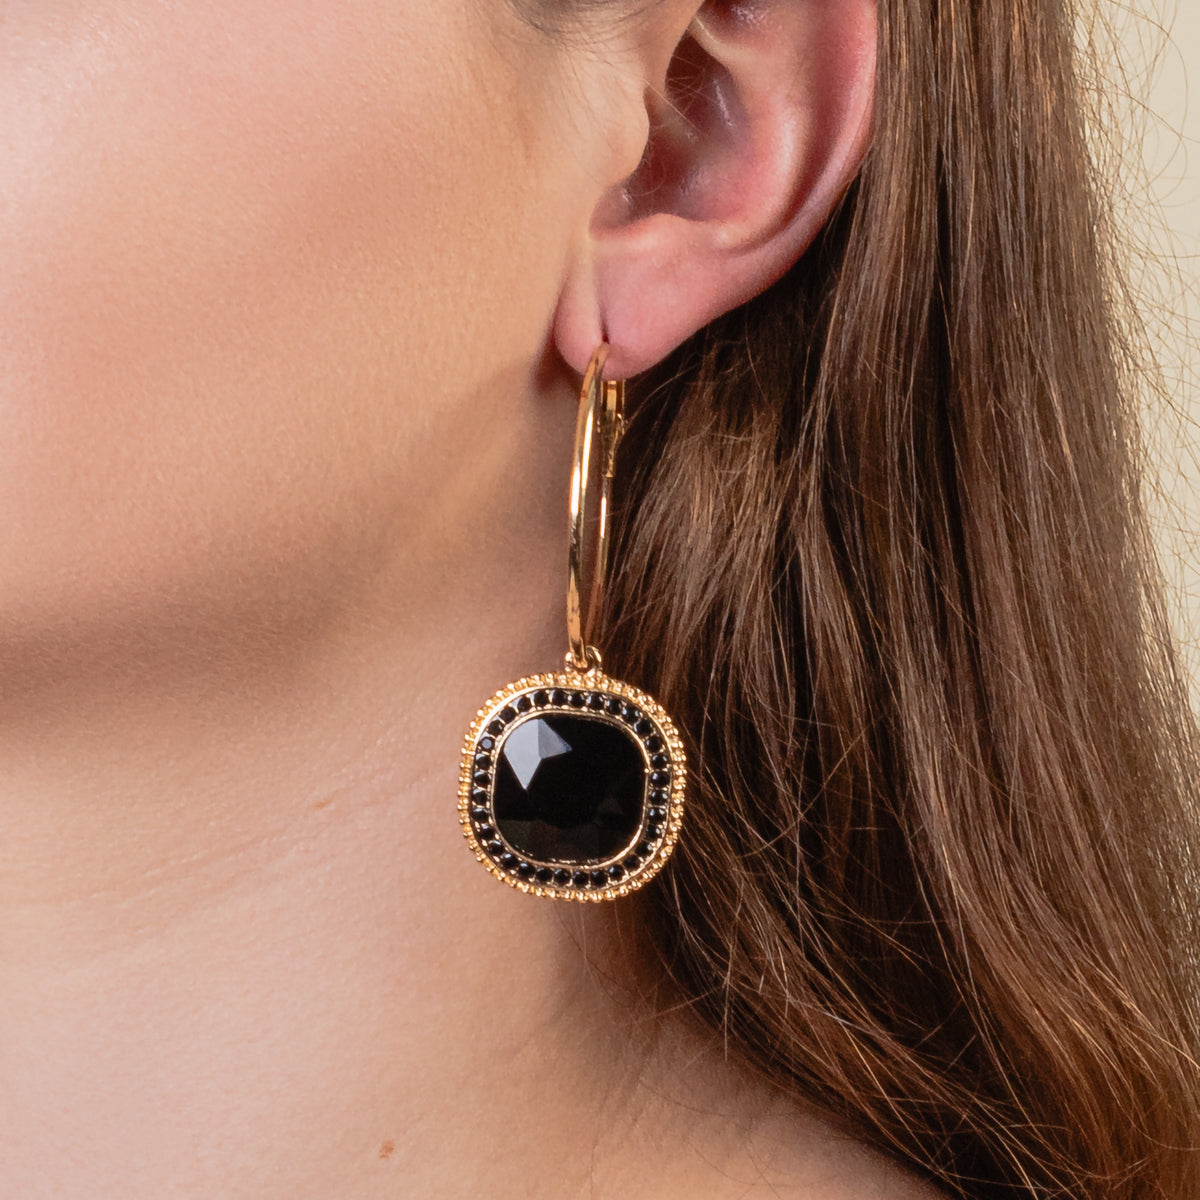 1312 - Rhinestone Hoop Earrings - Black